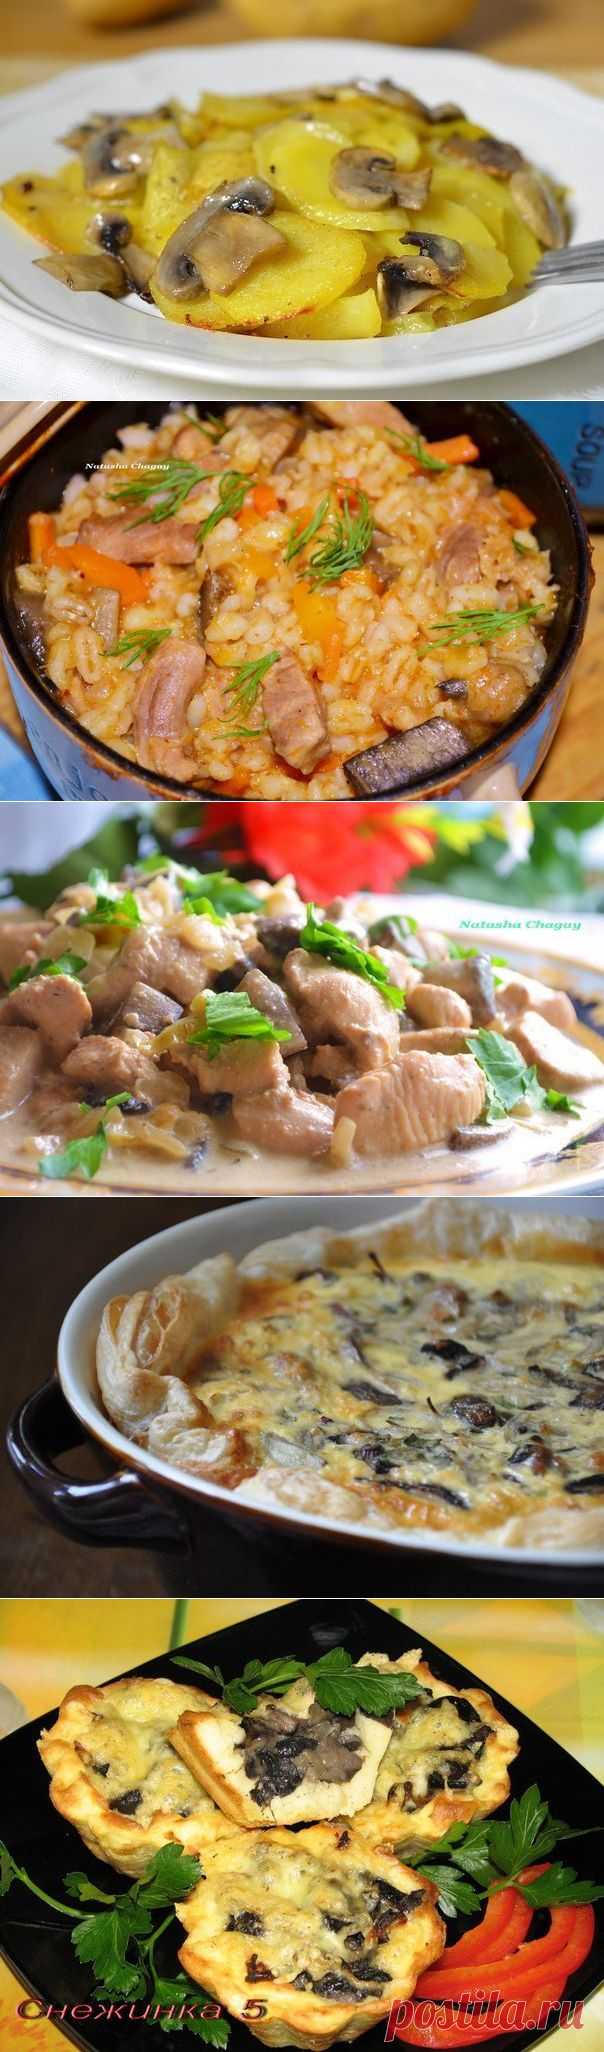 10 СУПЕР-РЕЦЕПТОВ приготовления блюд из грибов